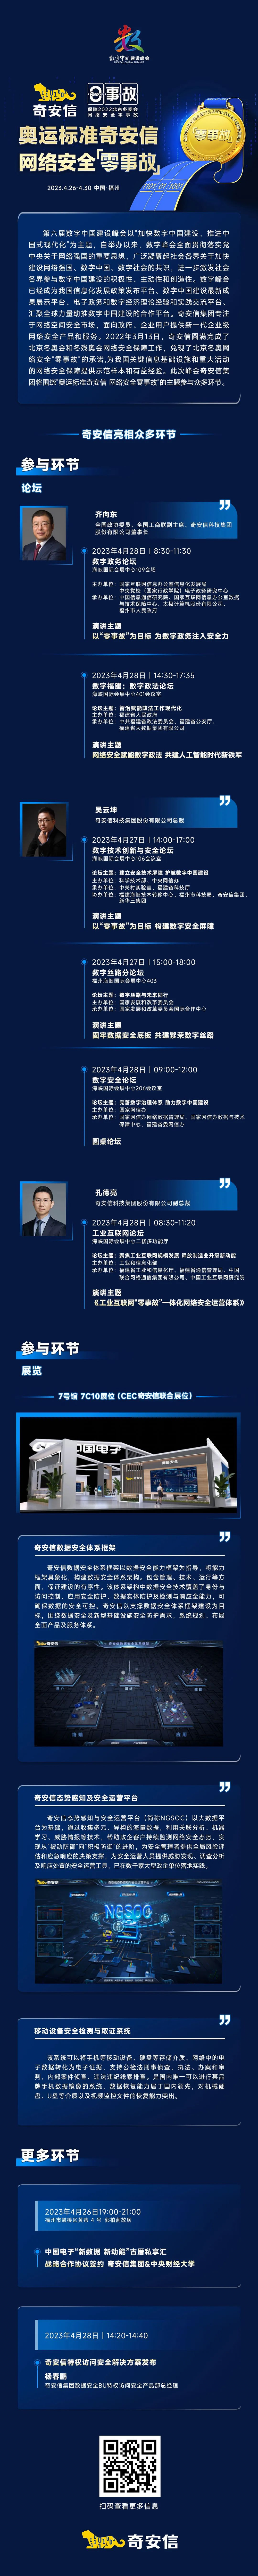 奇安信将亮相第六届数字中国建设峰会